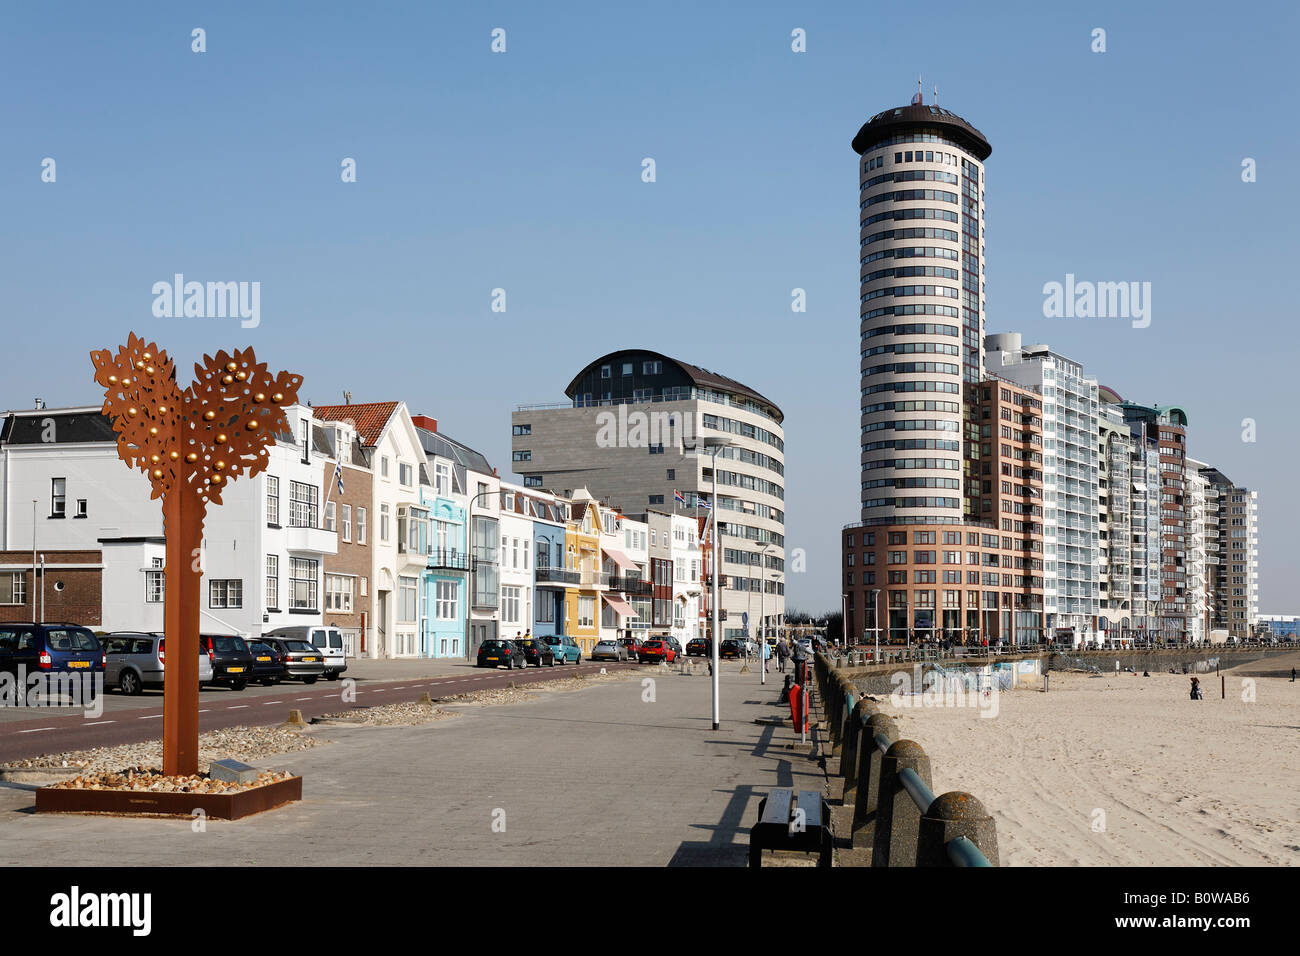 Les bâtiments de grande hauteur, Boulevard Evertsen, Vlissingen, Walcheren, Zélande, Pays-Bas, Europe Banque D'Images